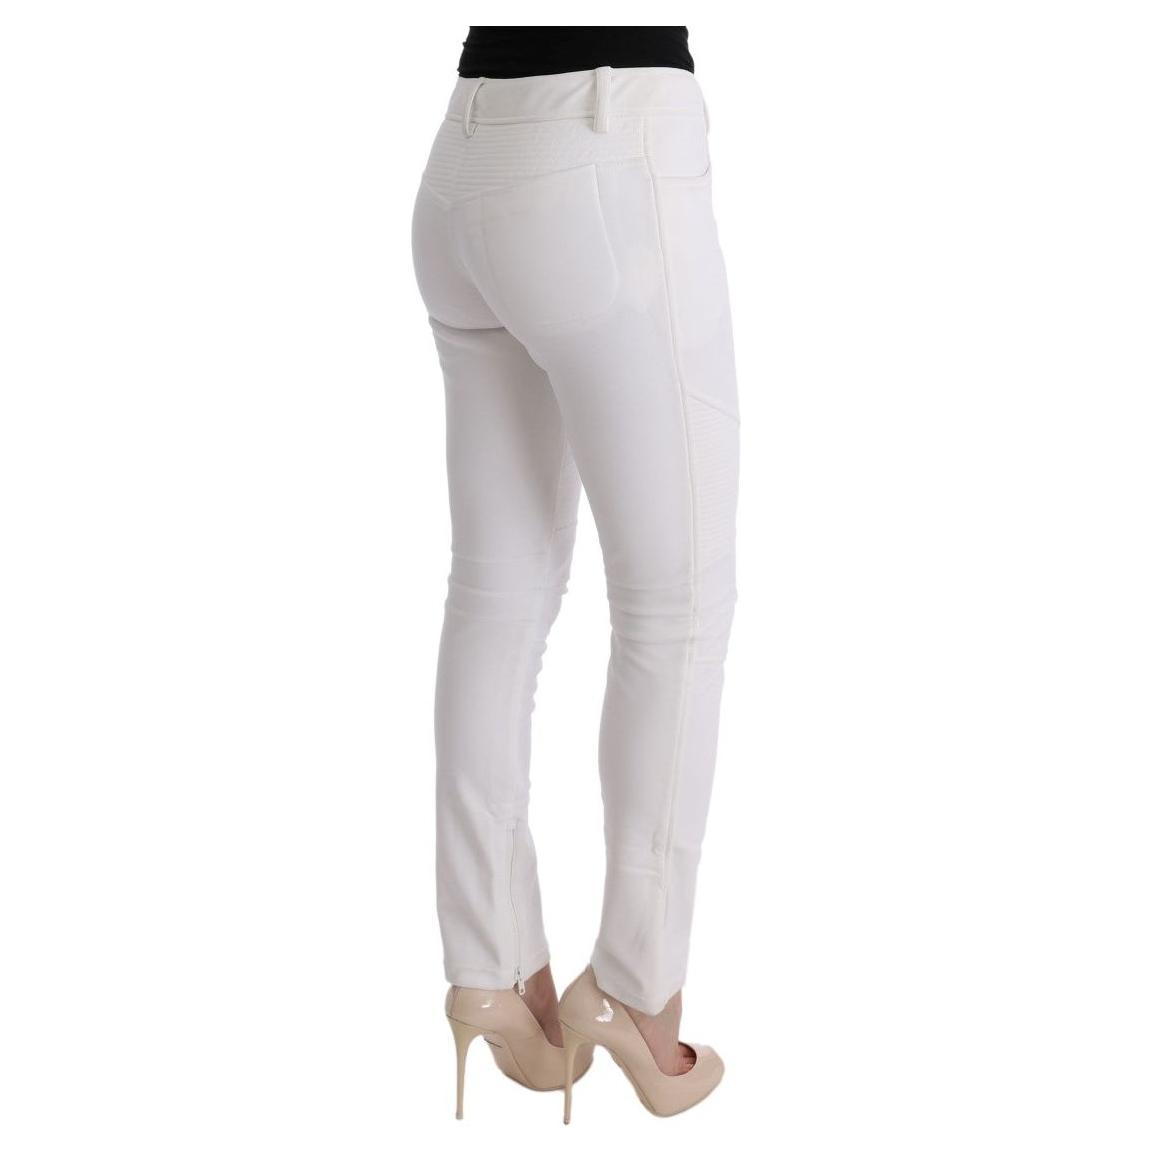 Ermanno Scervino Chic White Slim Fit Cotton Trousers white-cotton-slim-fit-casual-pants-2 449222-white-cotton-slim-fit-casual-pants-3-3.jpg